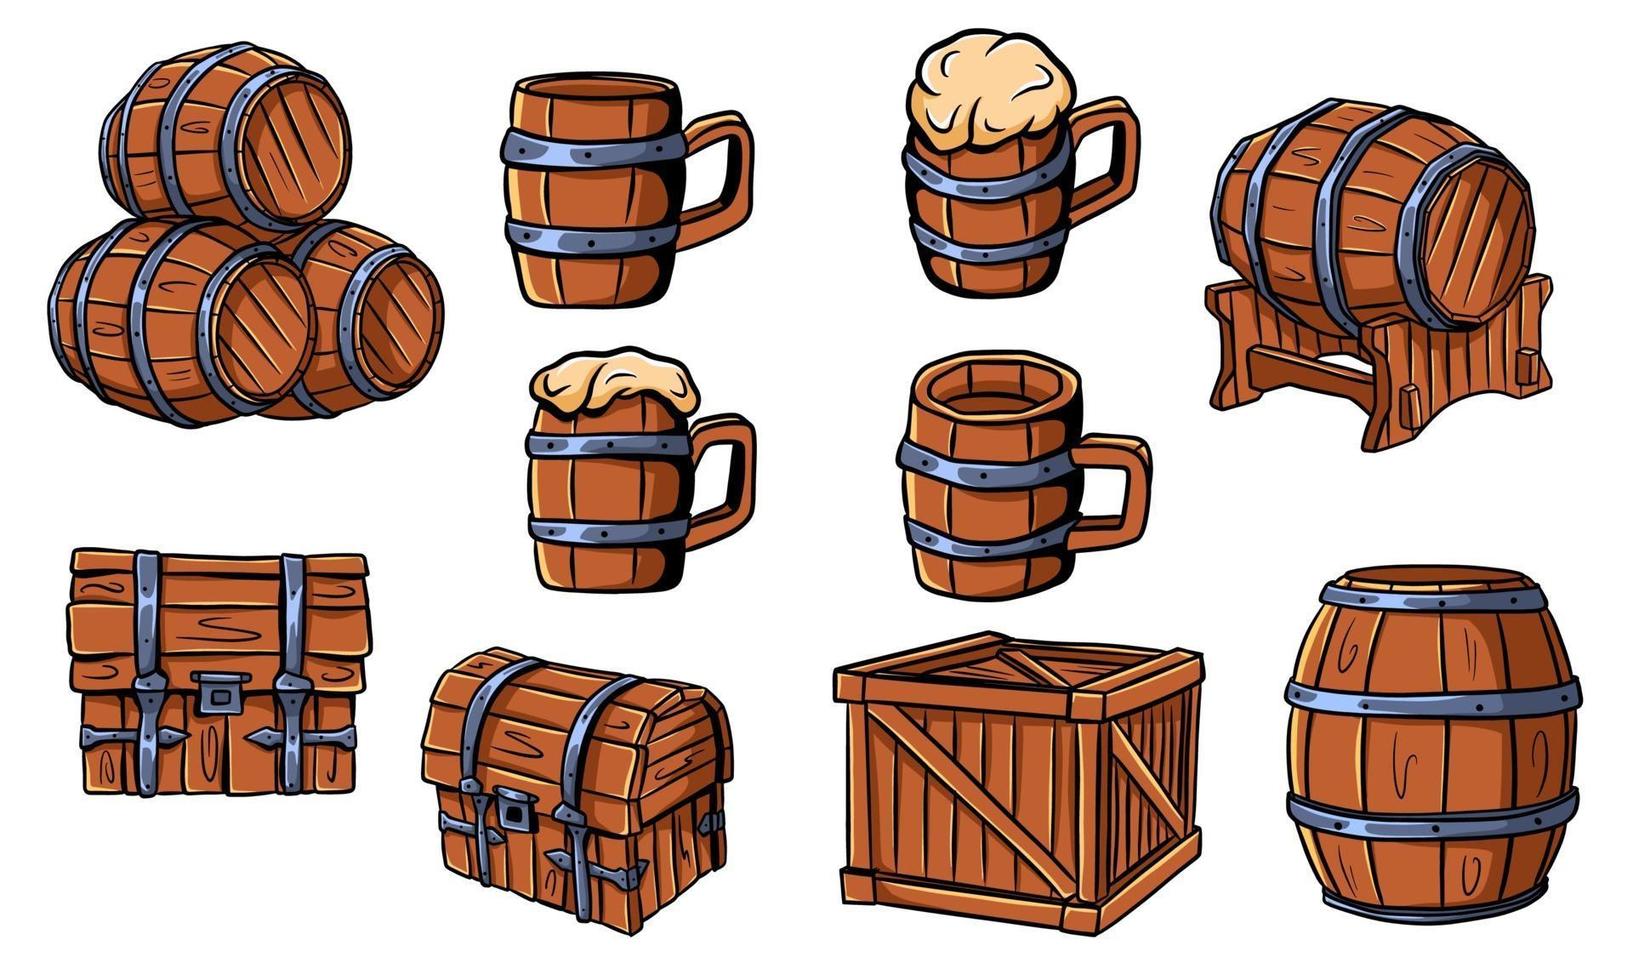 barriles de madera, cofres, cerveza o jarras de cerveza. artesanías de madera. caja. barriles para vino. ilustración vectorial aislado. vector